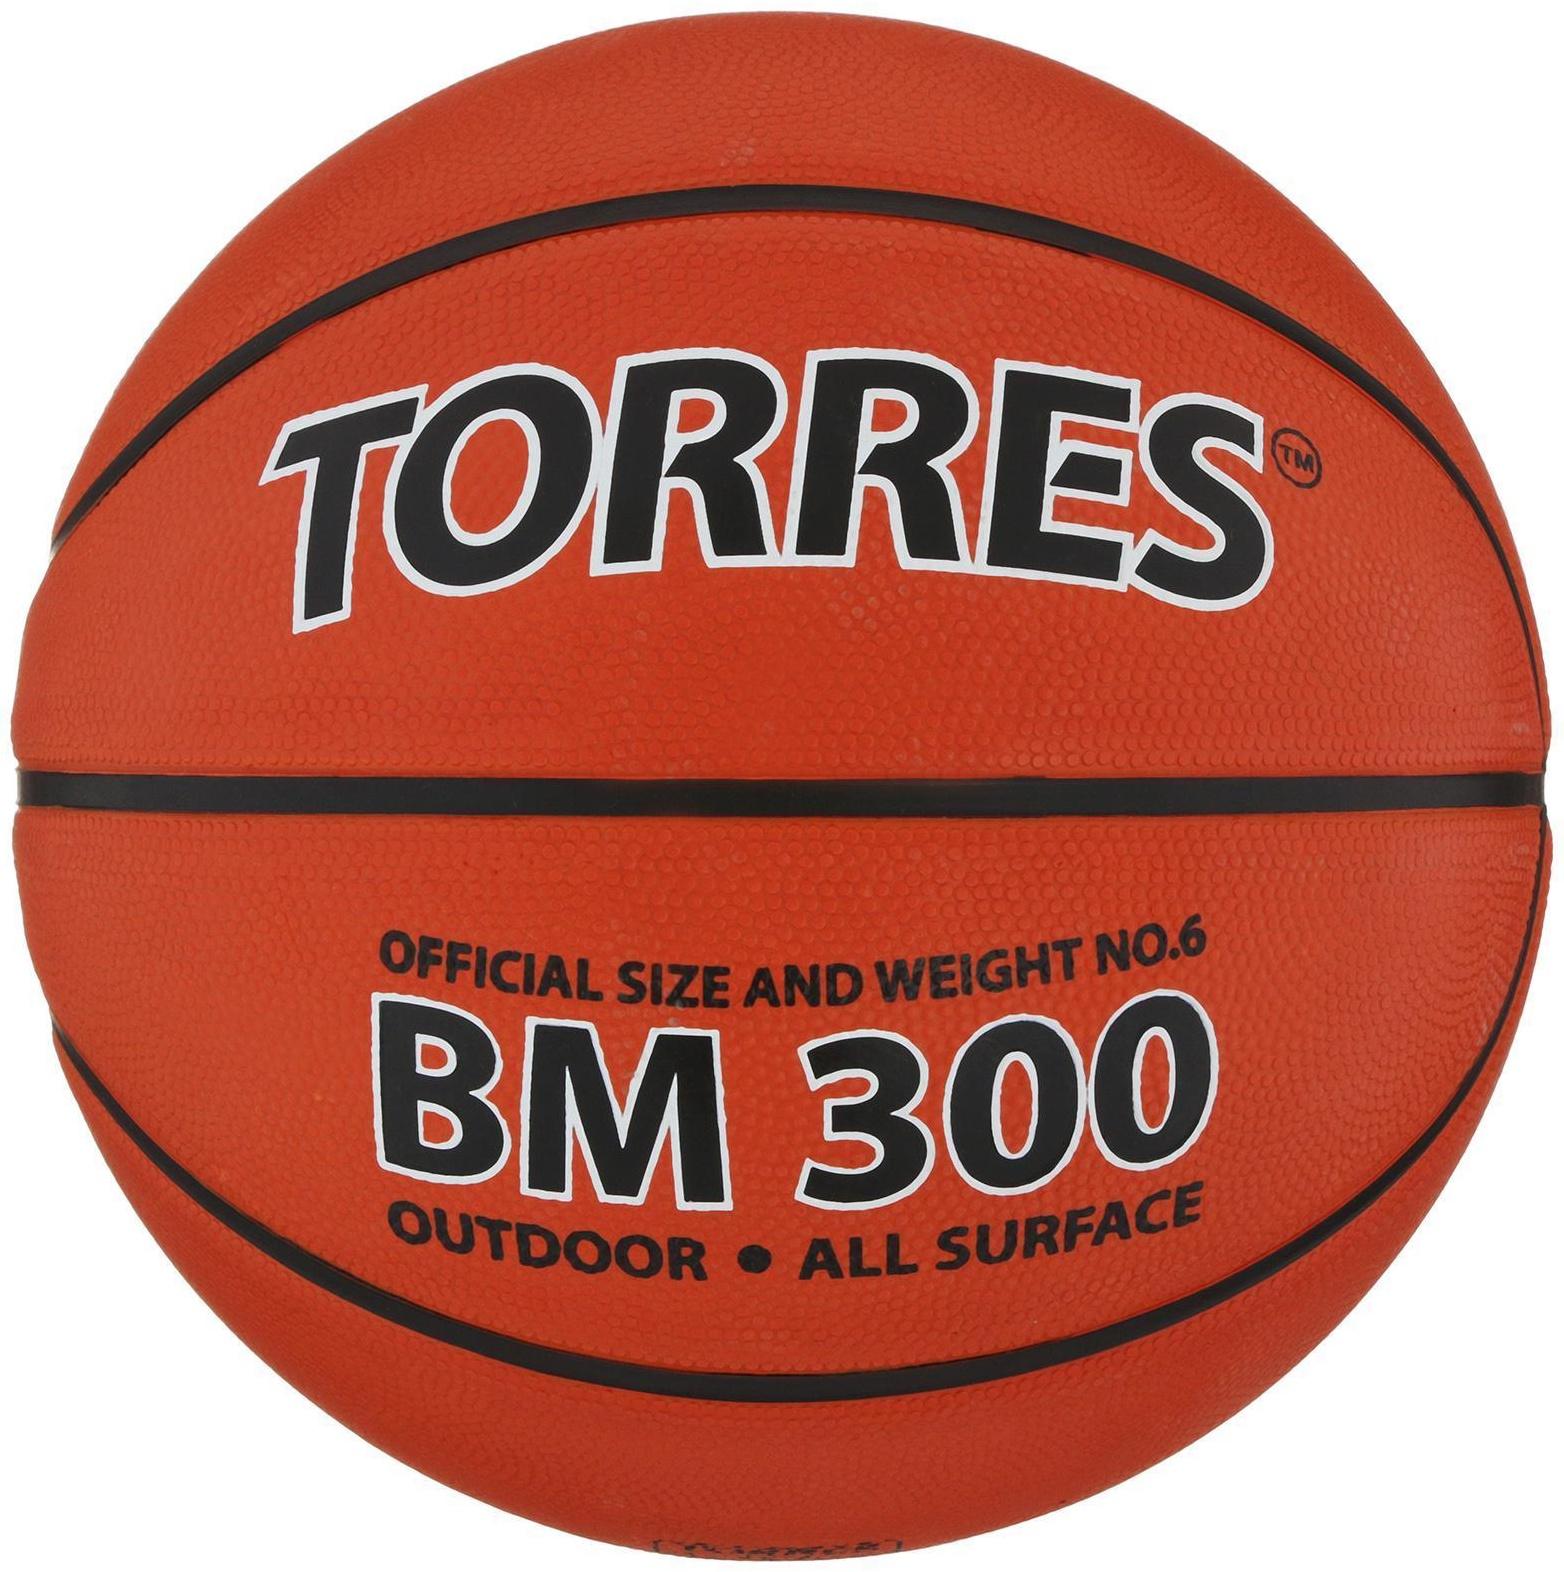 Мяч баскетбольный Torres BM300, B00016, резина, клееный, 8 панелей, размер 6